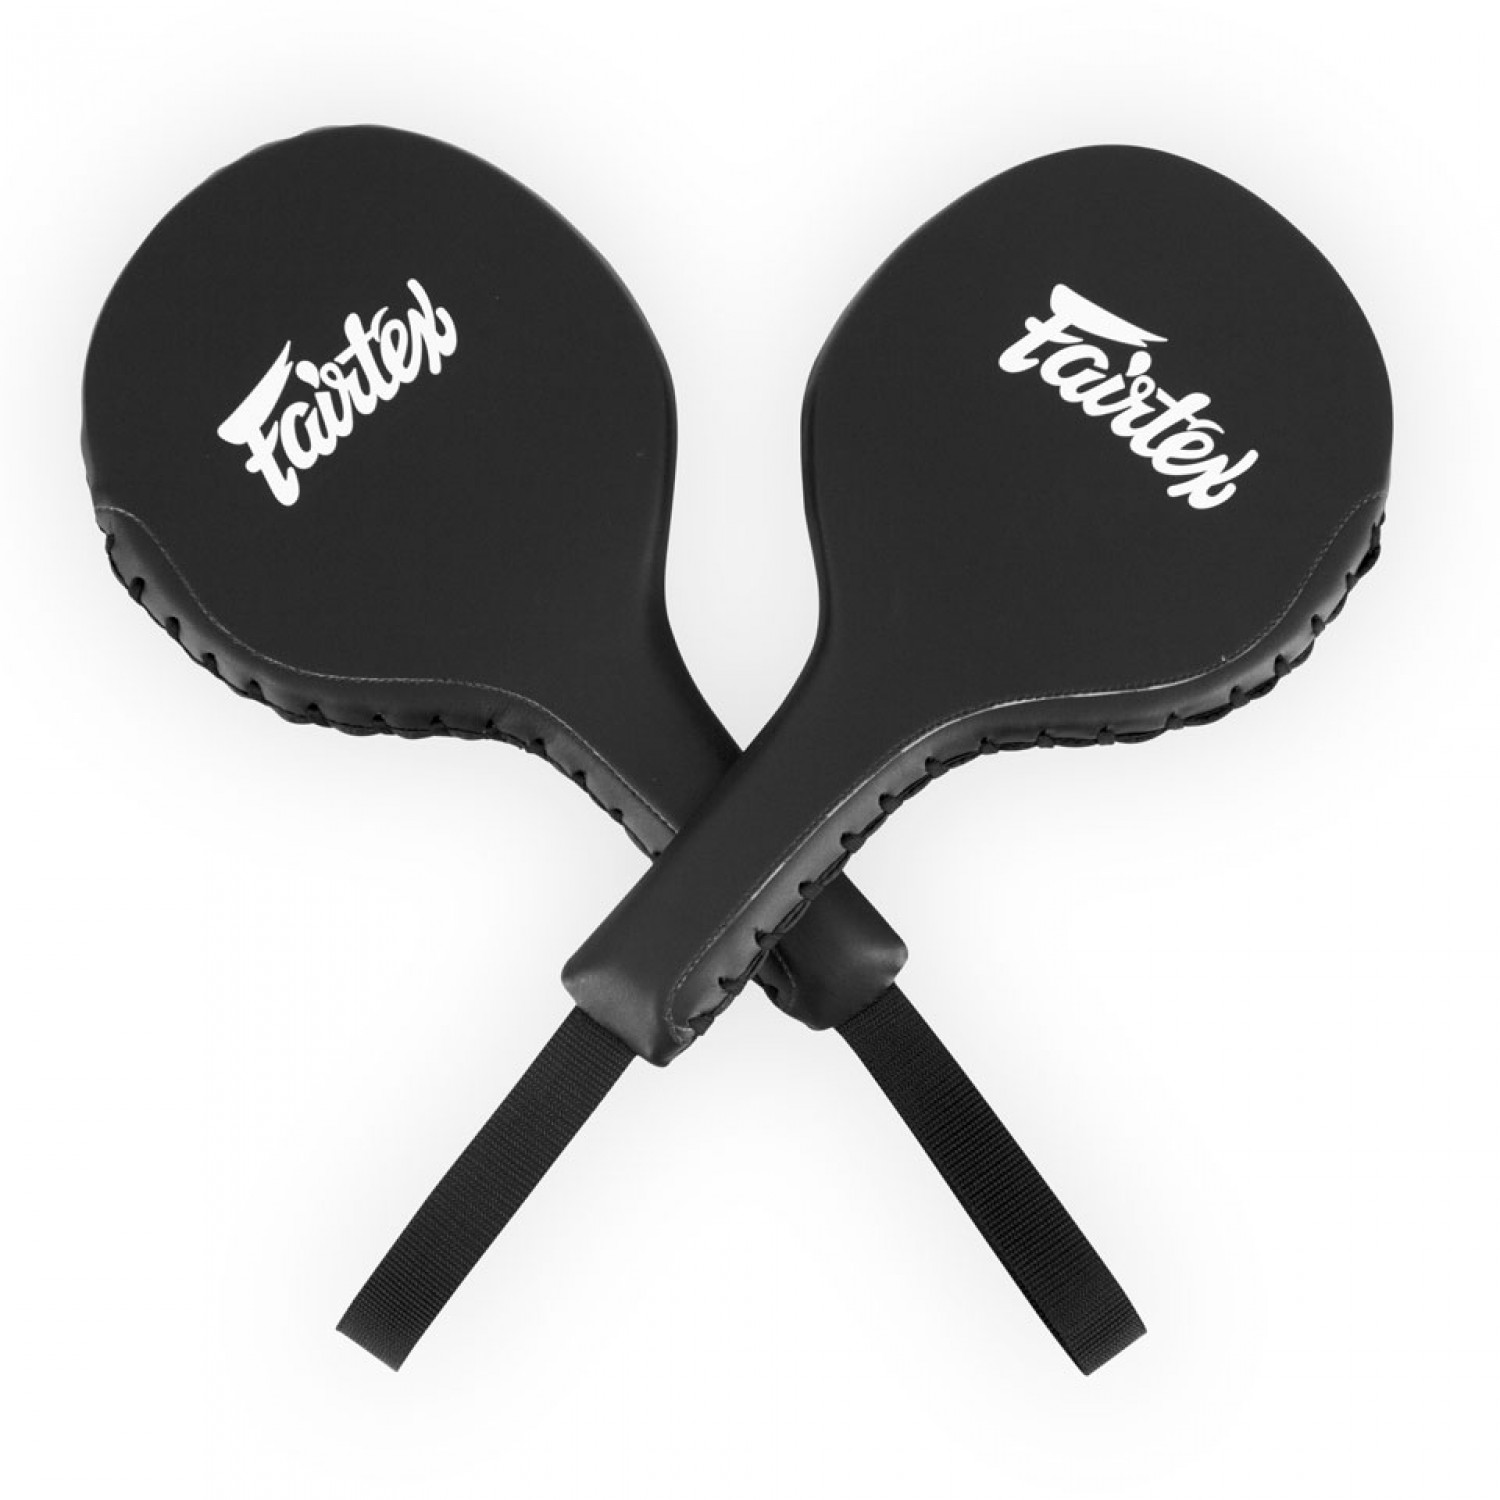 Fairtex Boxing Paddles - Pair - Click Image to Close